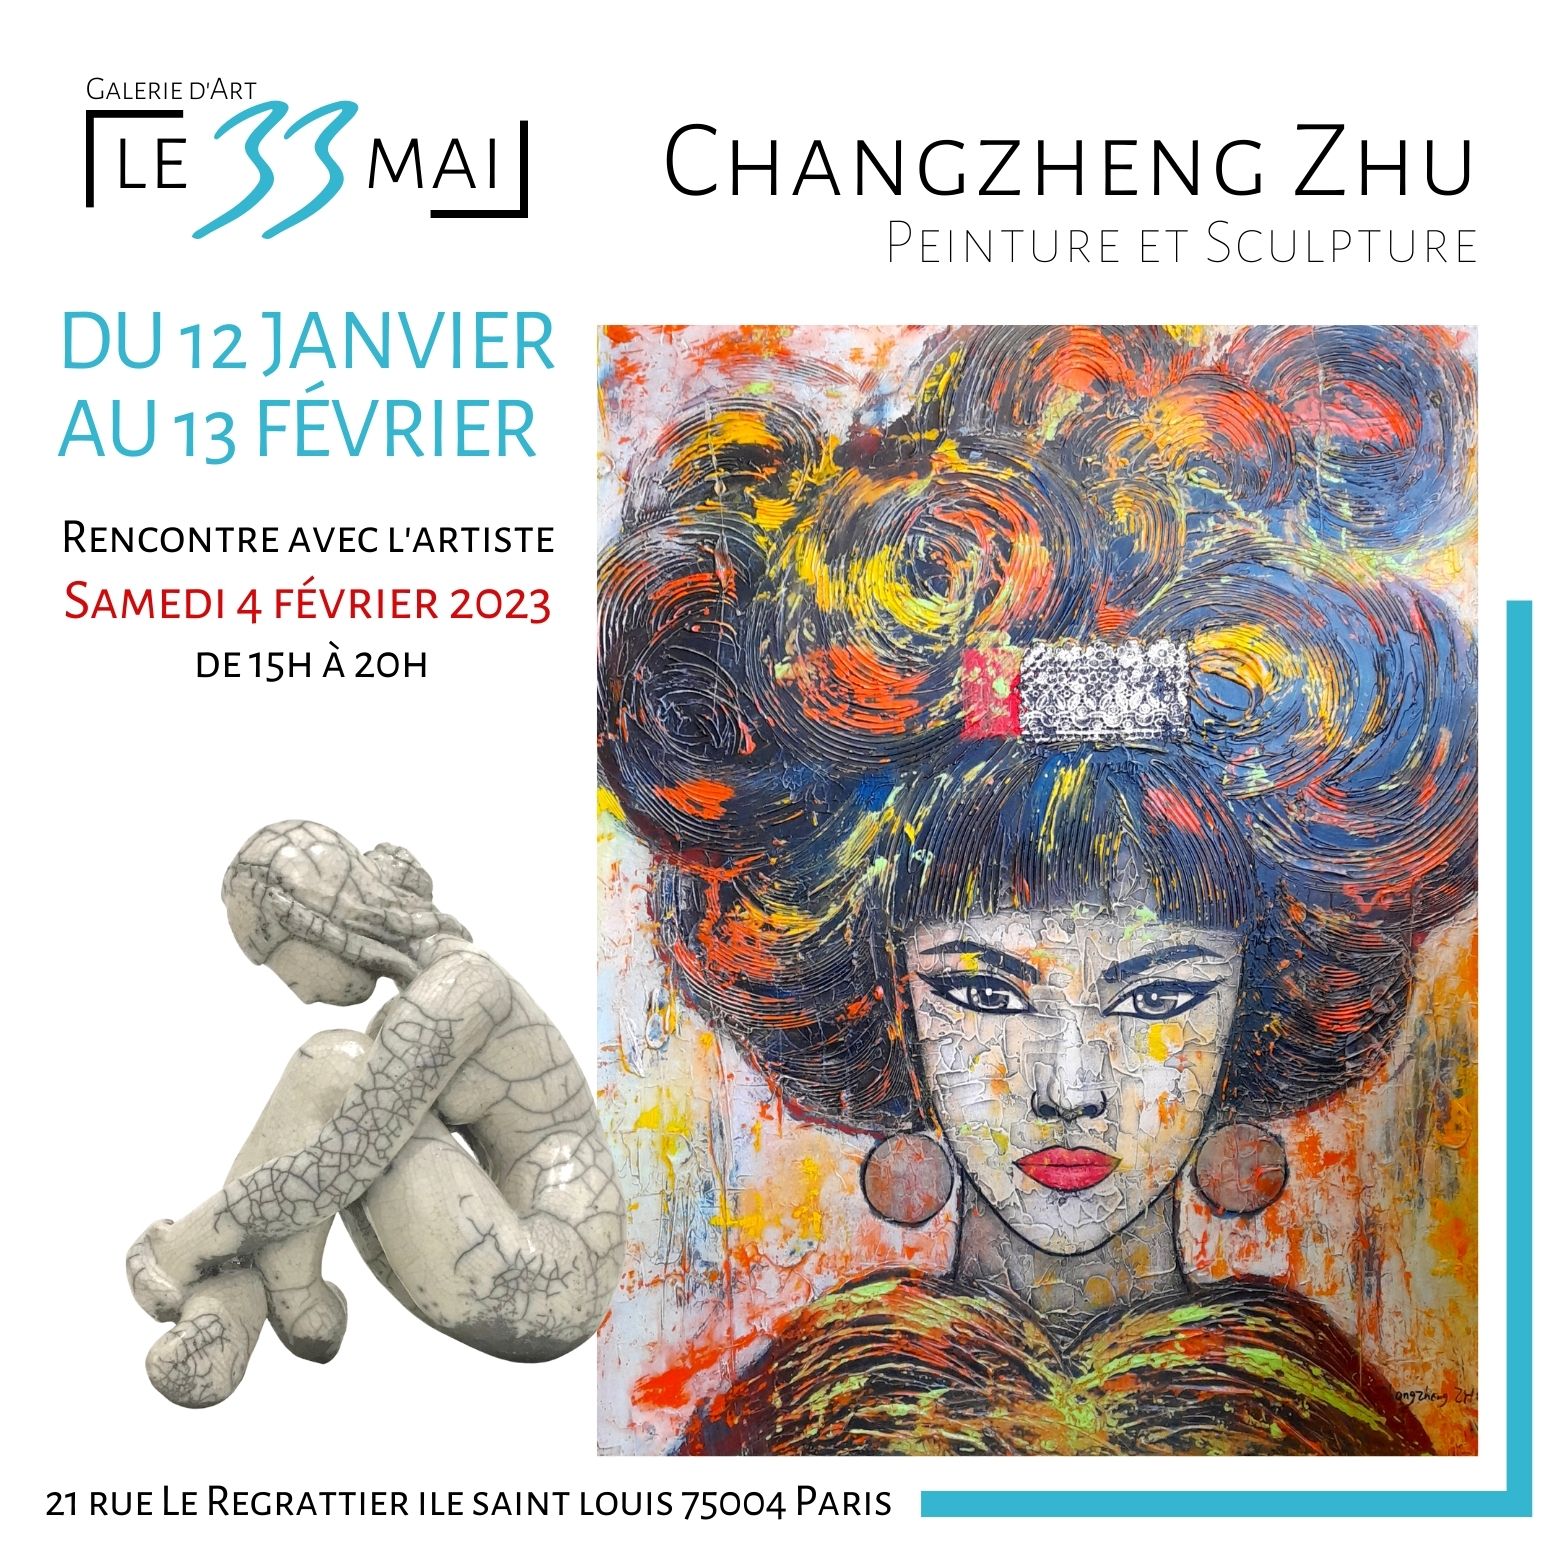 Exposition Peinture et Sculpture Changzheng Zhu